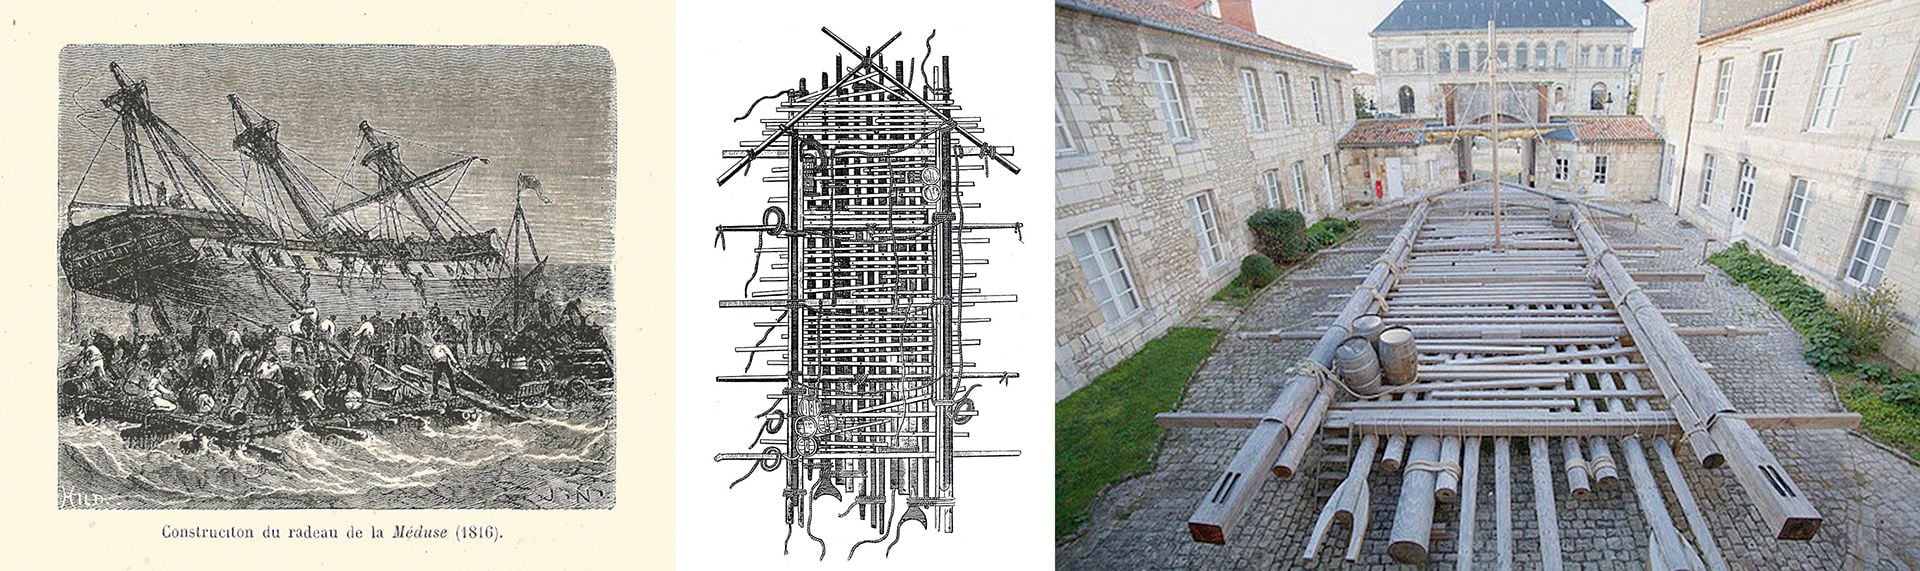 Litografía de la época sobre la construcción de la balsa, un modelo de cómo era desde arriba y una reconstrucción contemporánea 